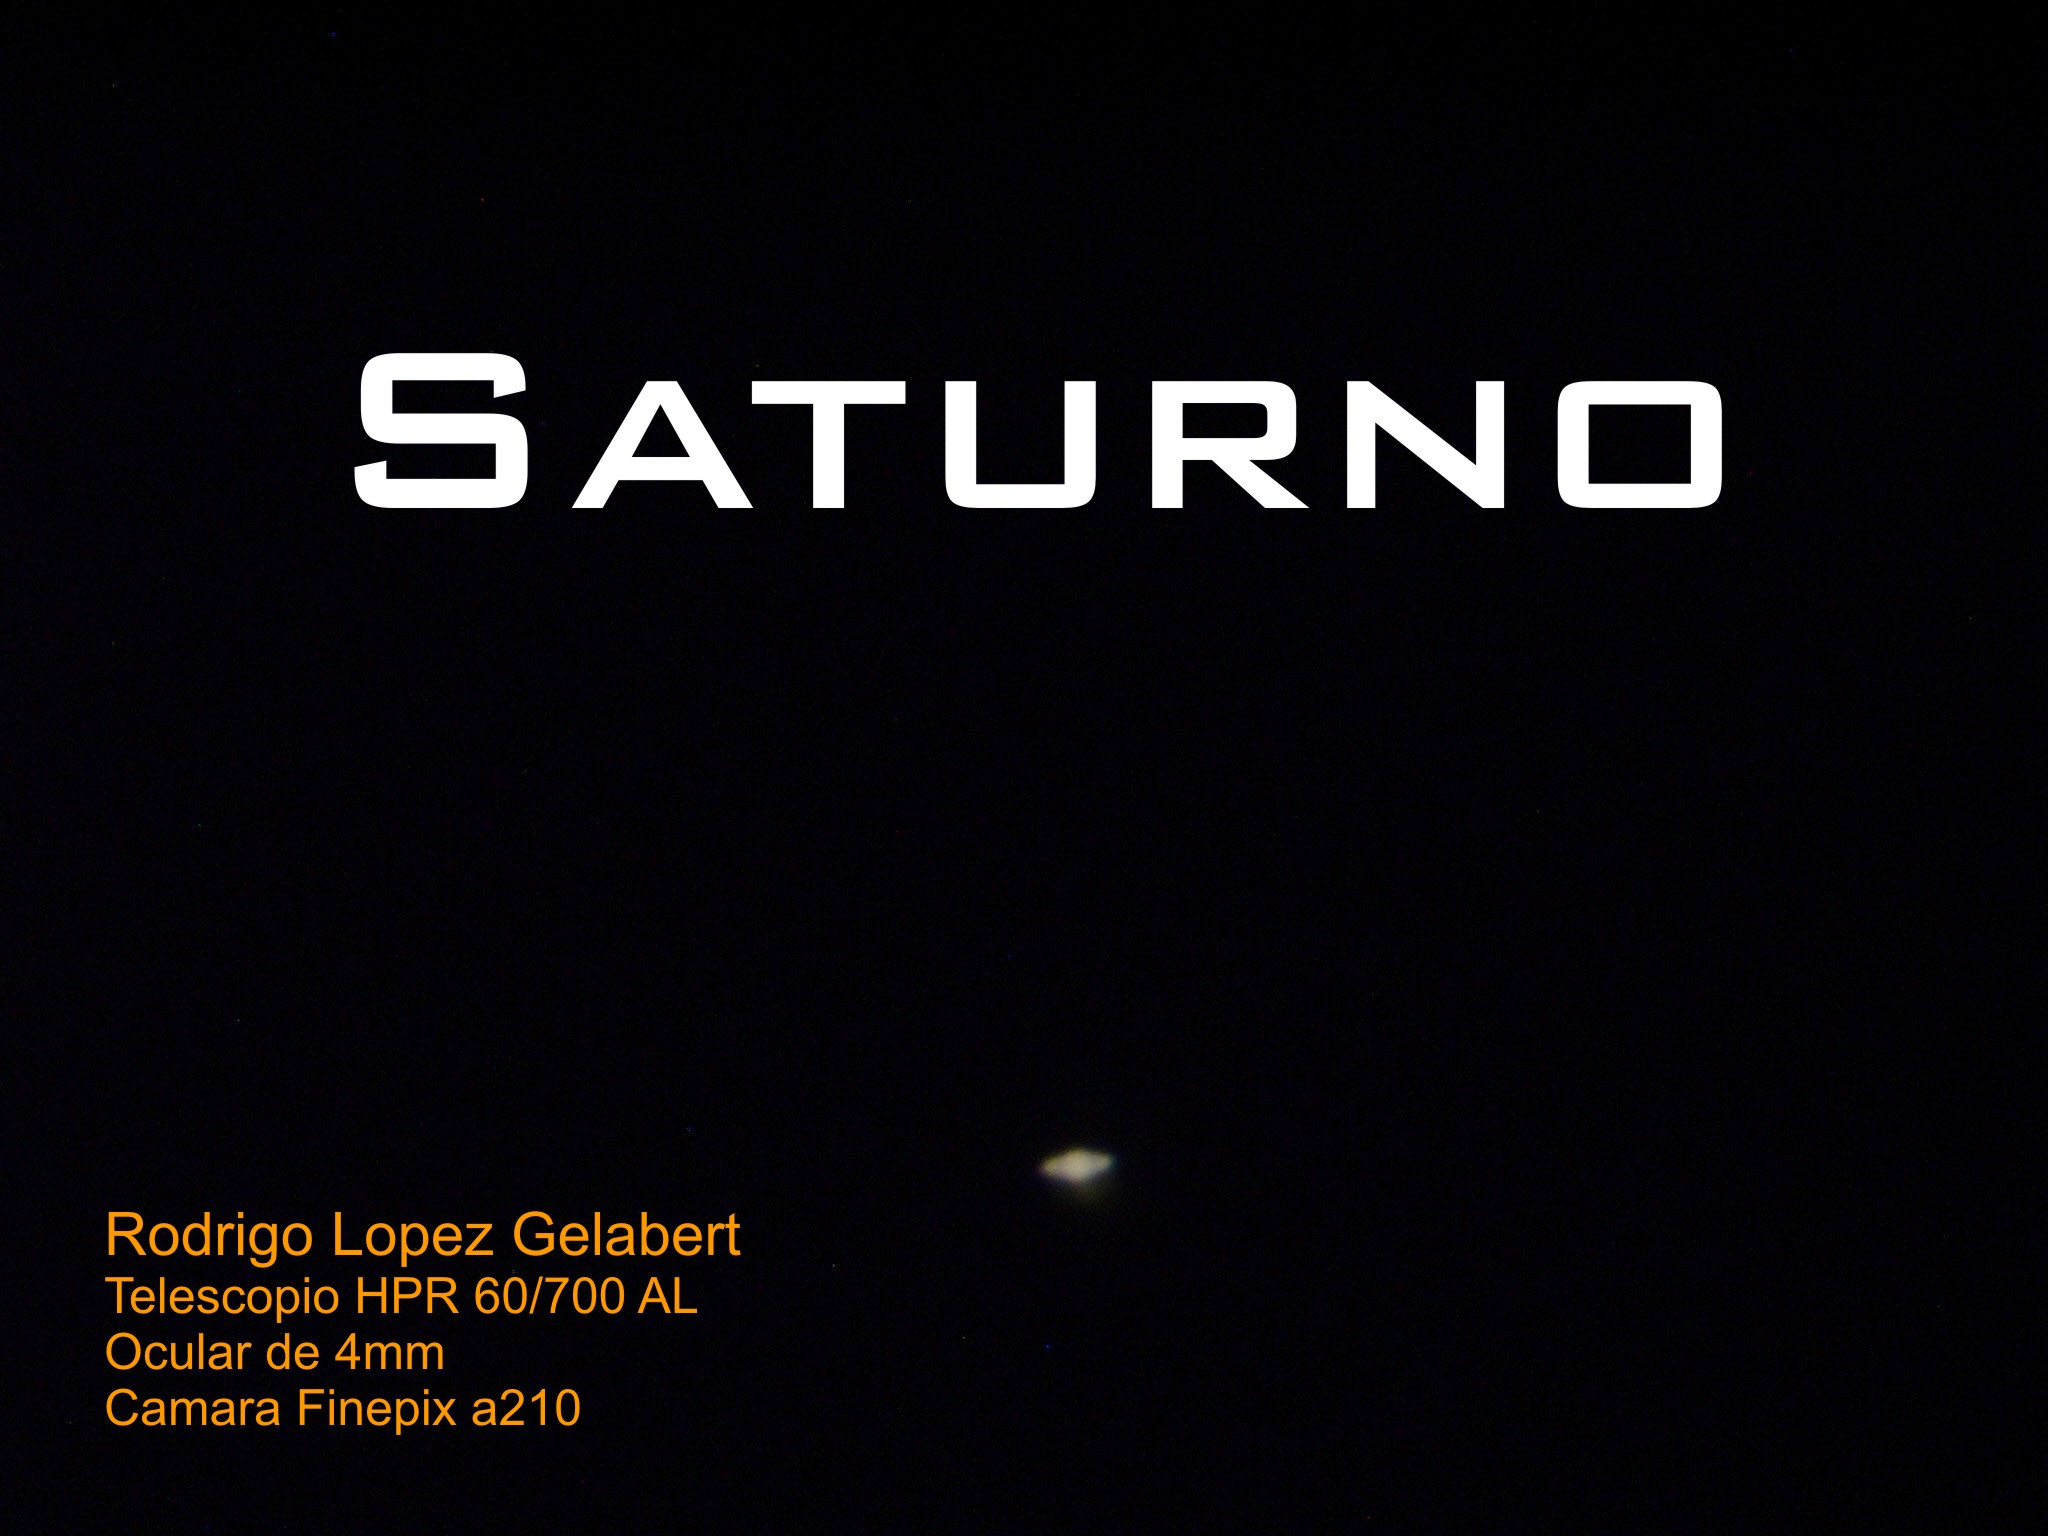 5776b3b107ad6_Saturno2.jpg.46635bc4ae4ff